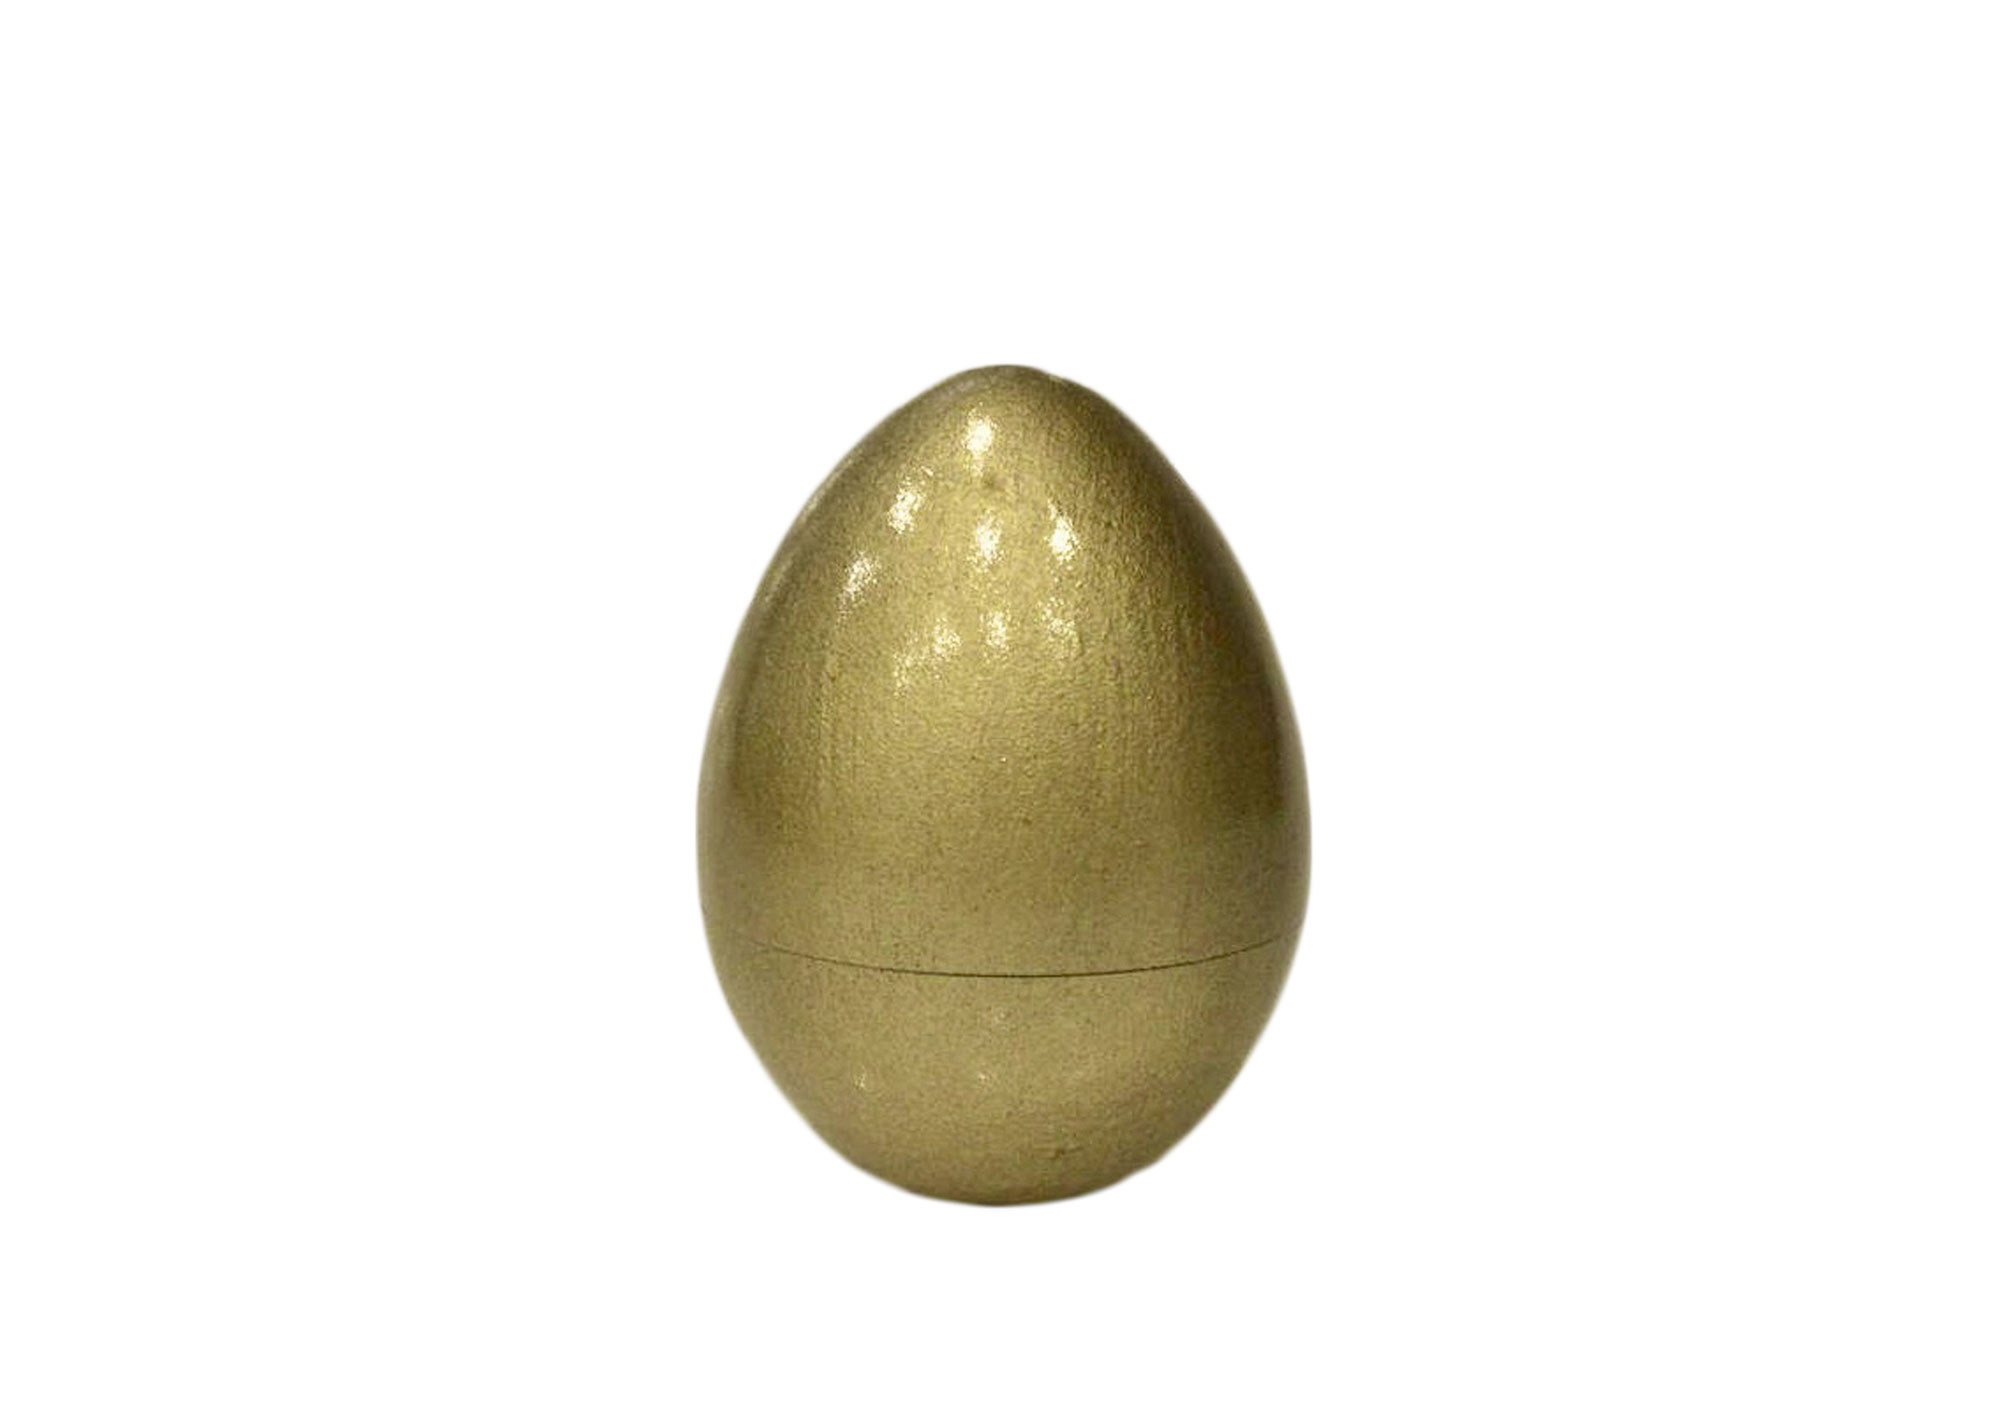 Buy Golden Chicken Hollow Wooden Gold Egg 2.75" at GoldenCockerel.com